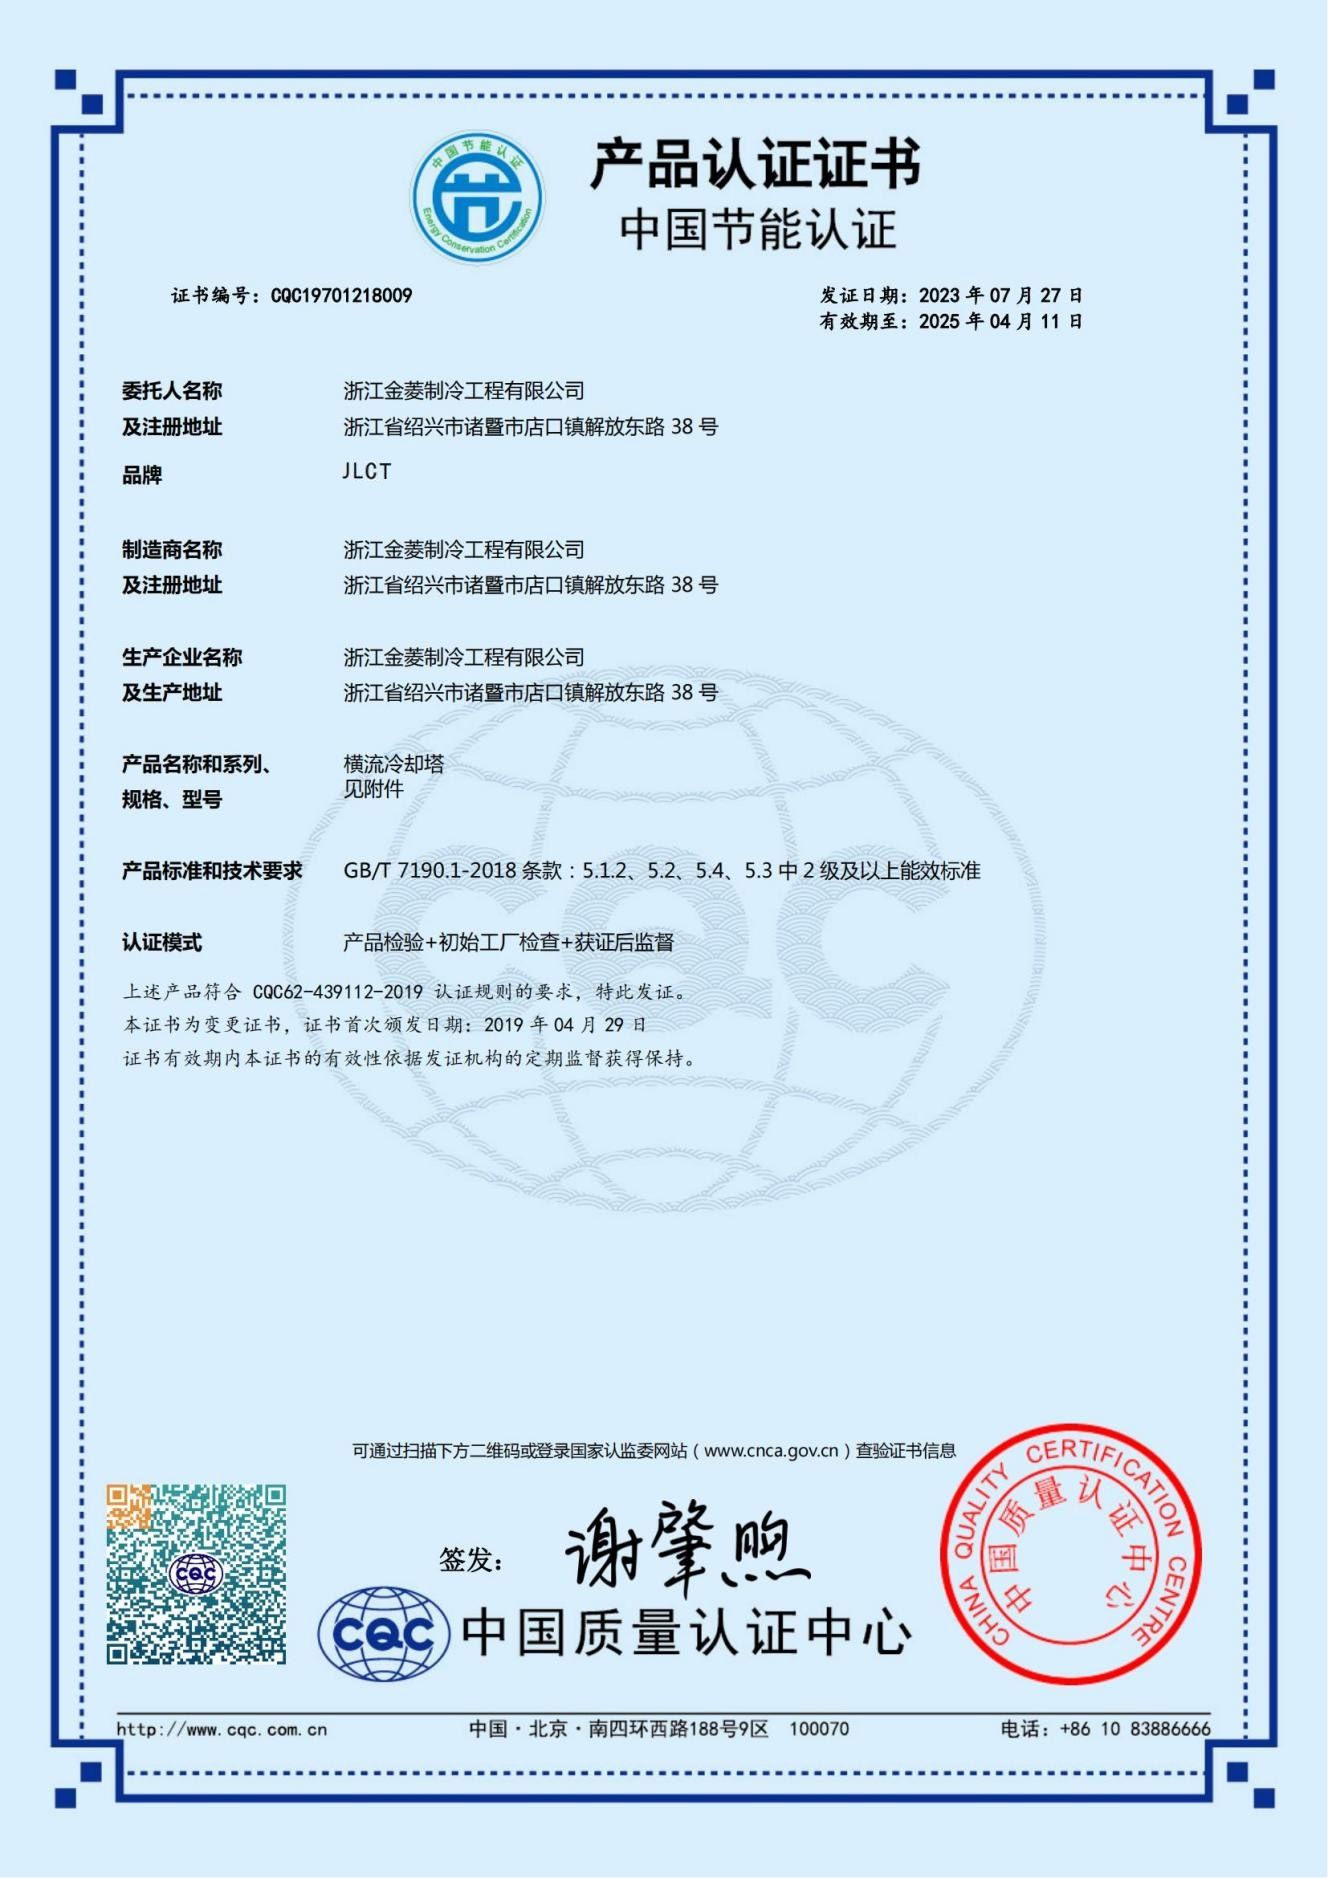 JNT系列节能产品认证证书